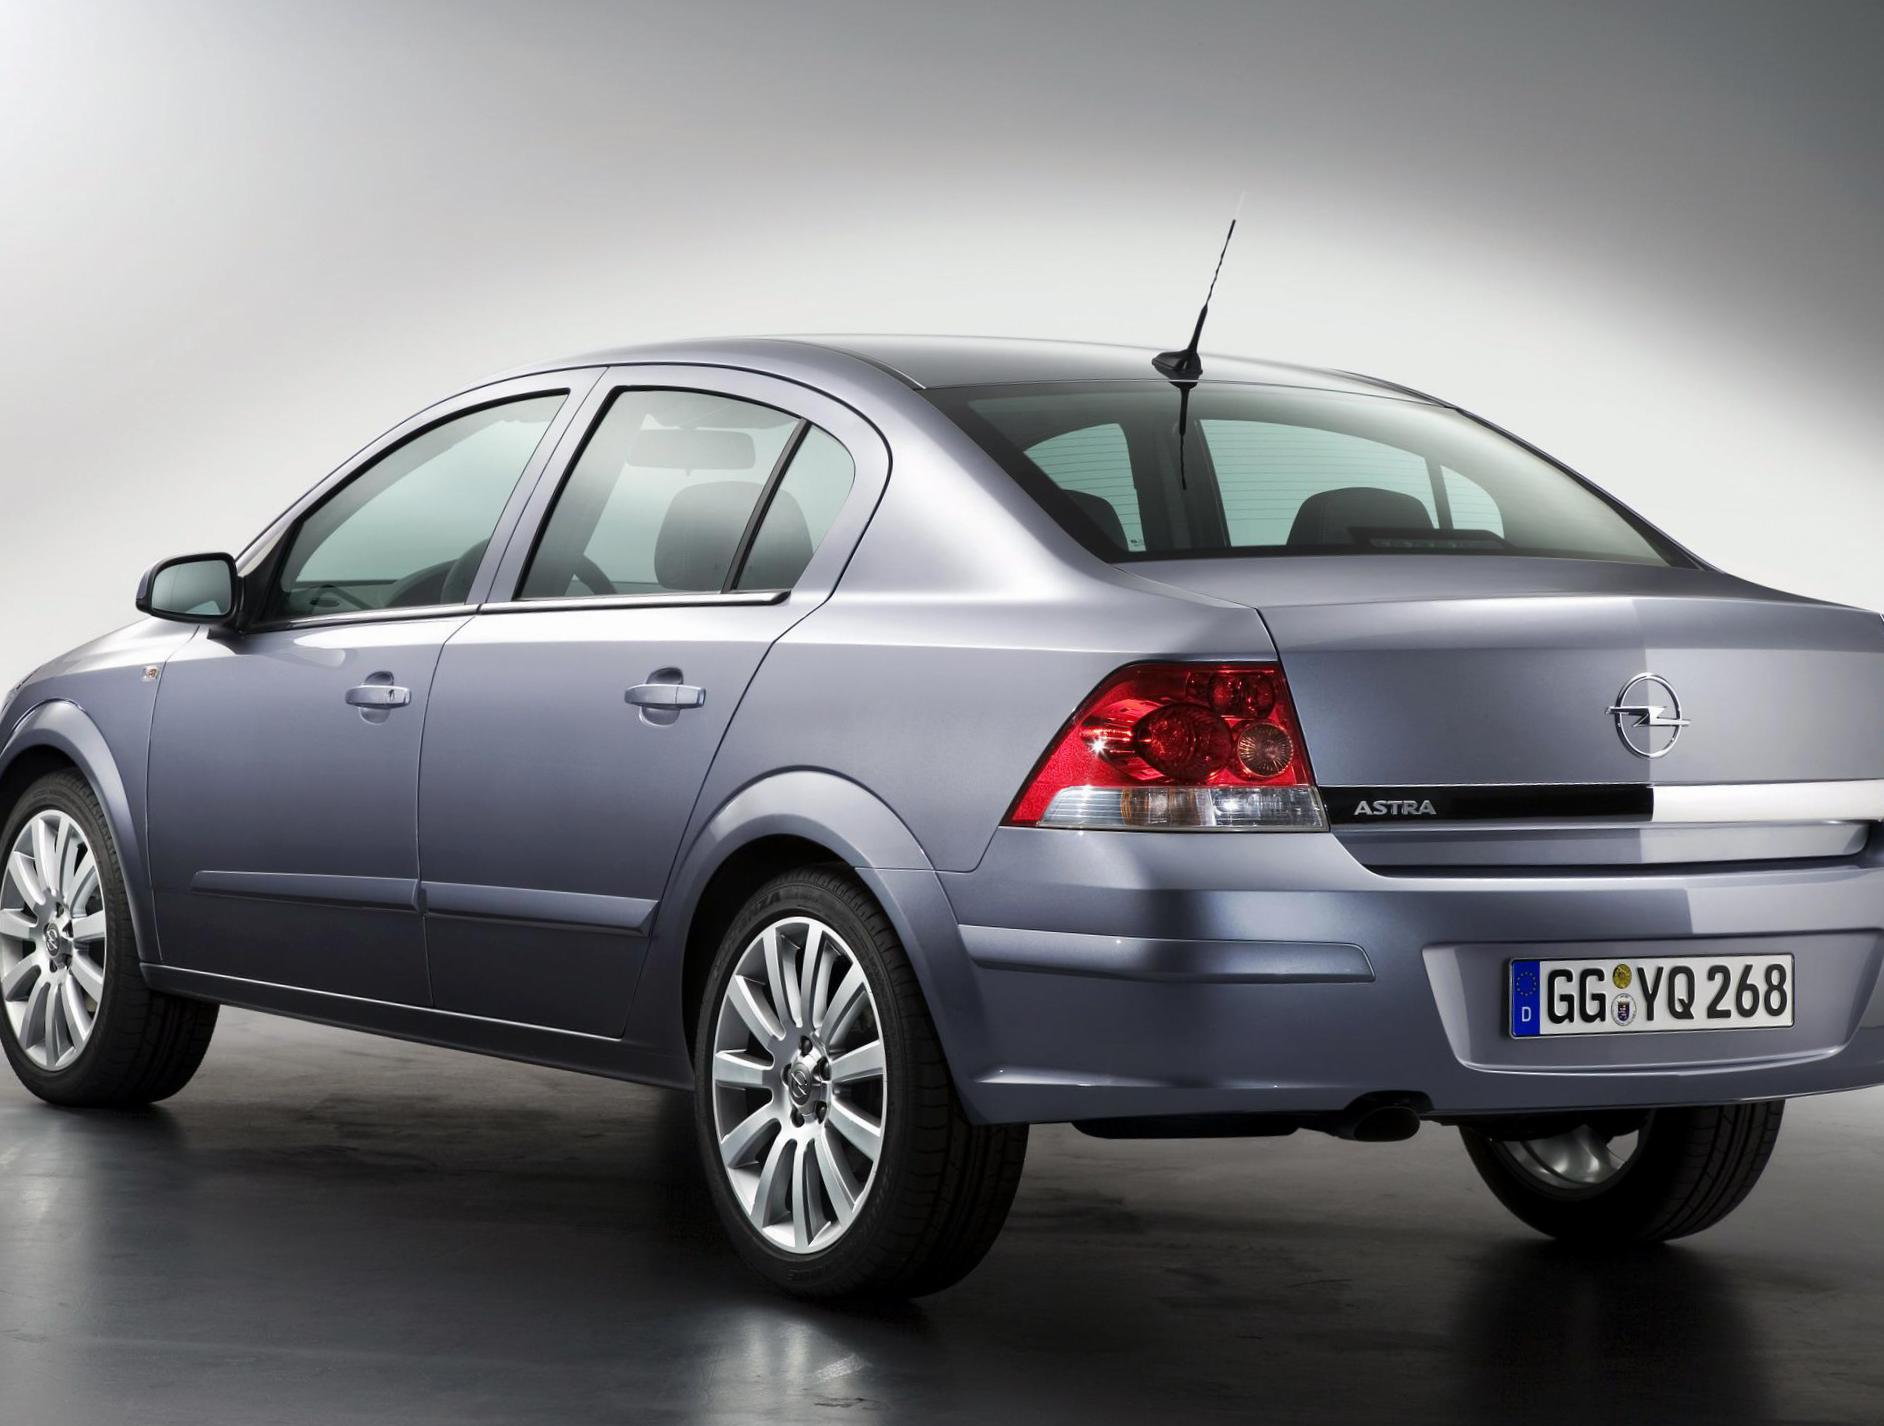 Opel Astra H Sedan reviews minivan